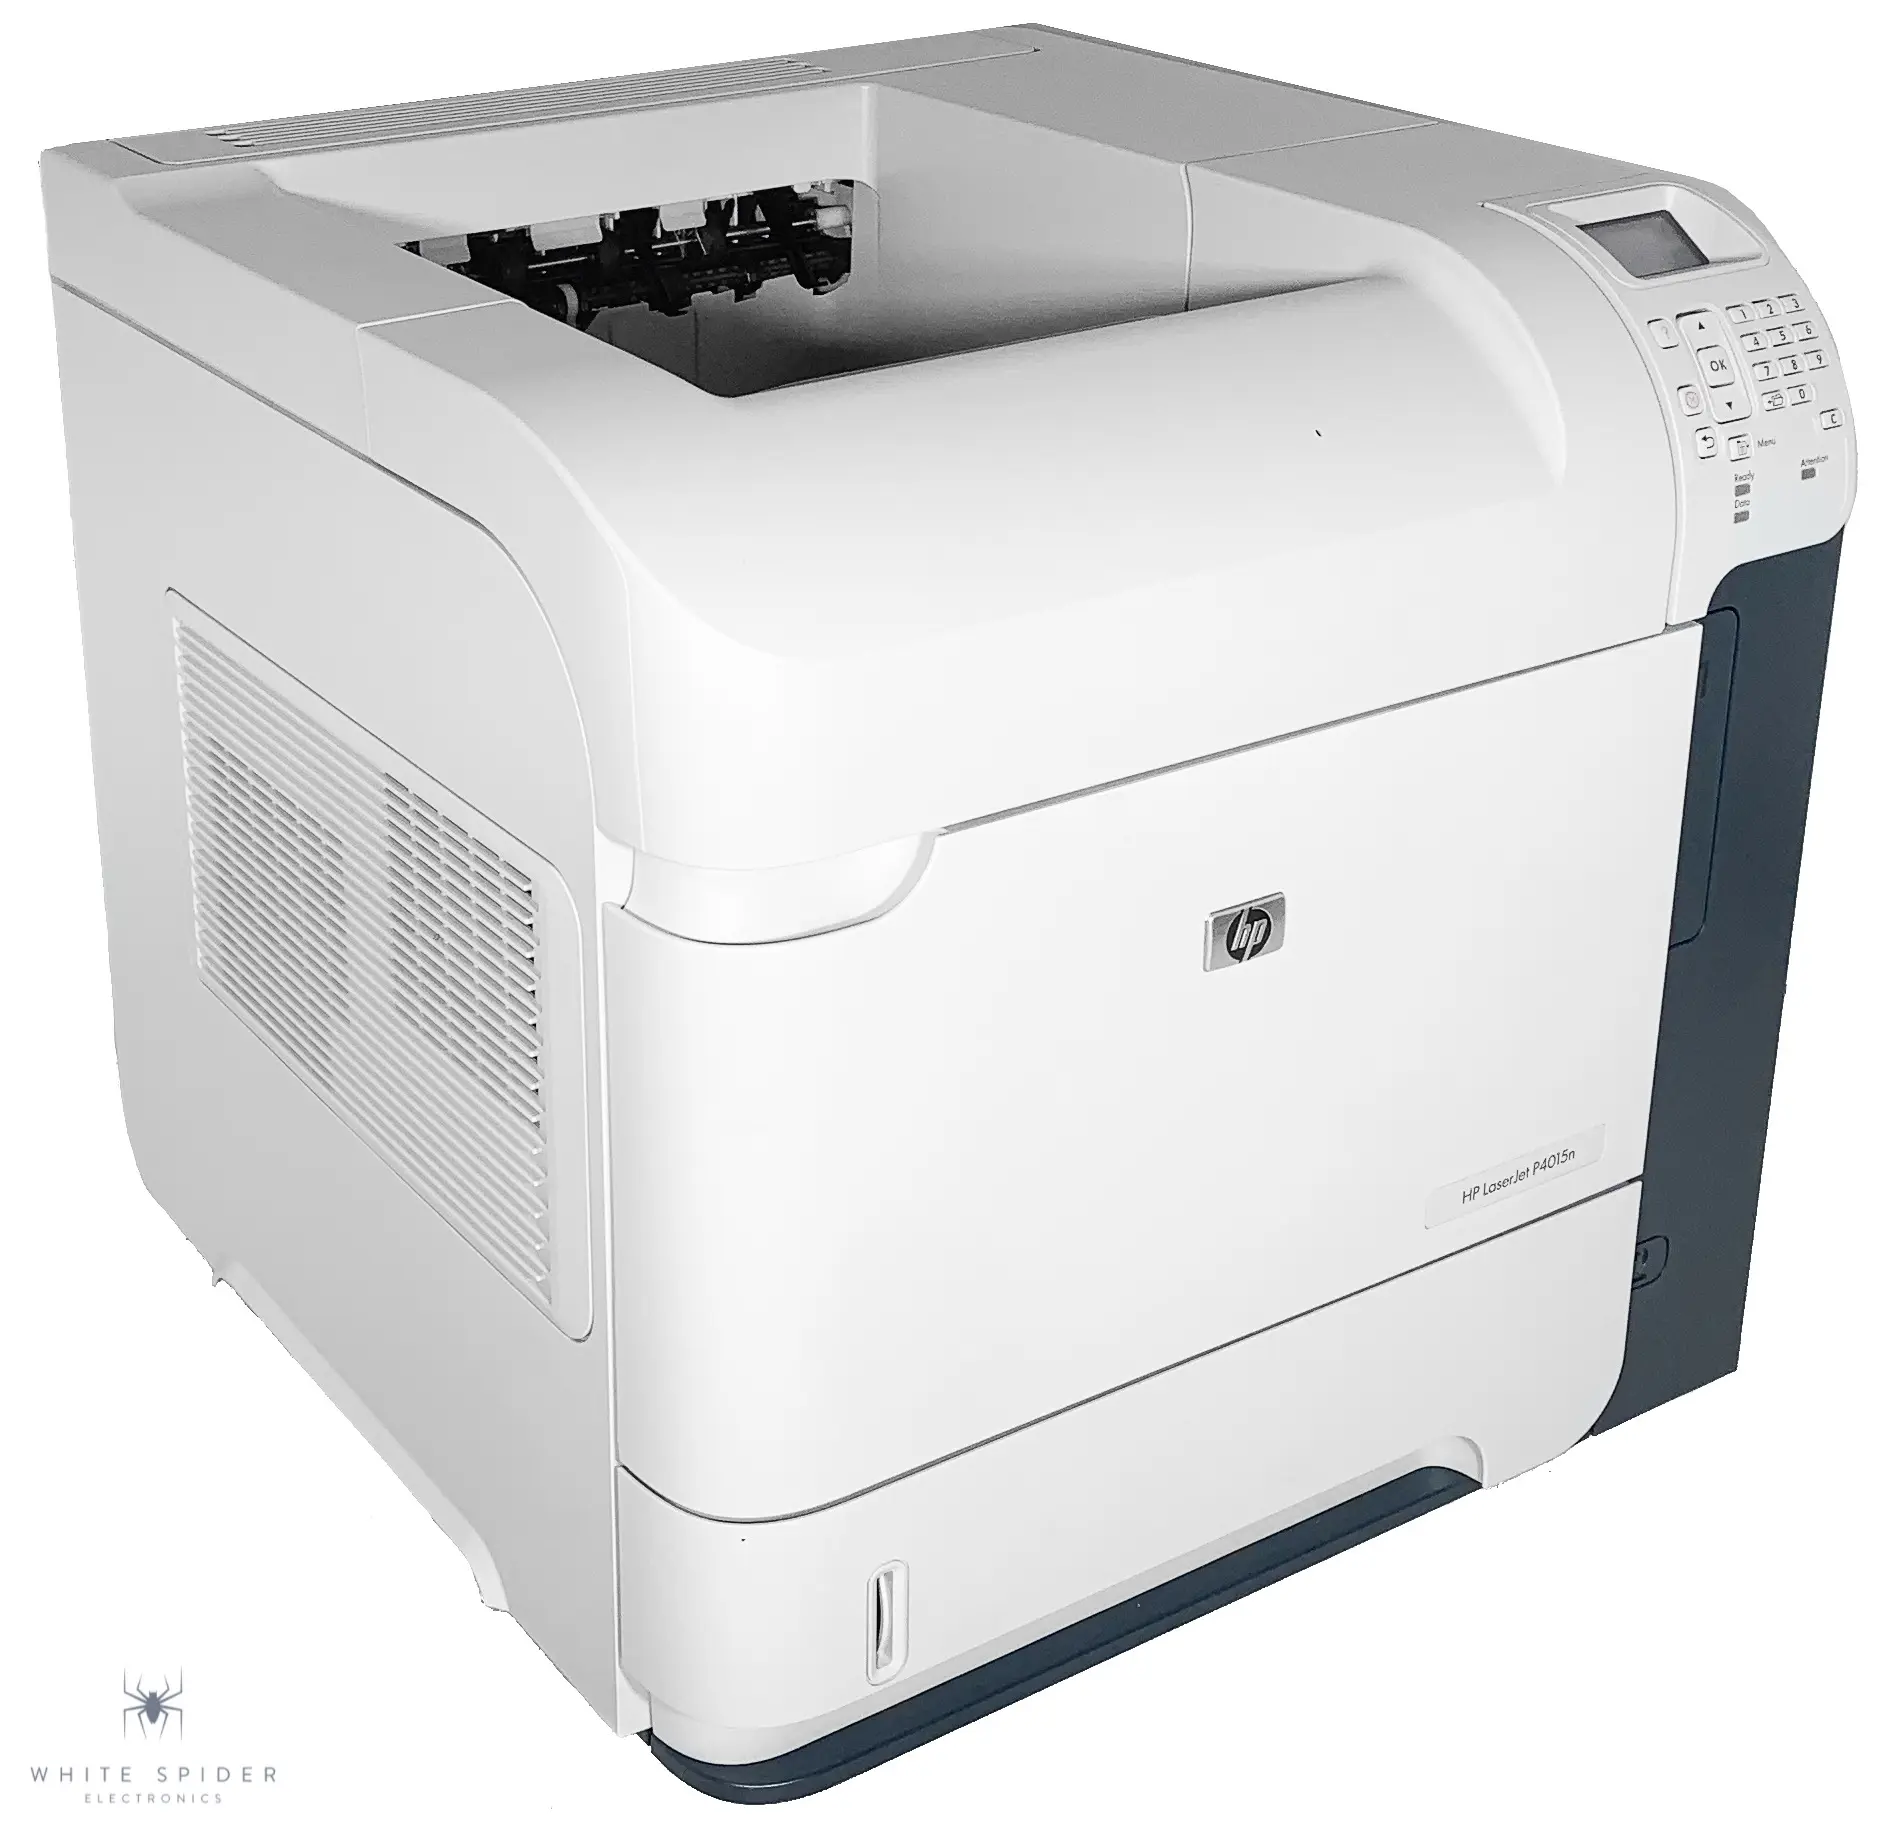 hewlett-packard laserjet p4015n dua printer - Does HP LaserJet P4015N print color